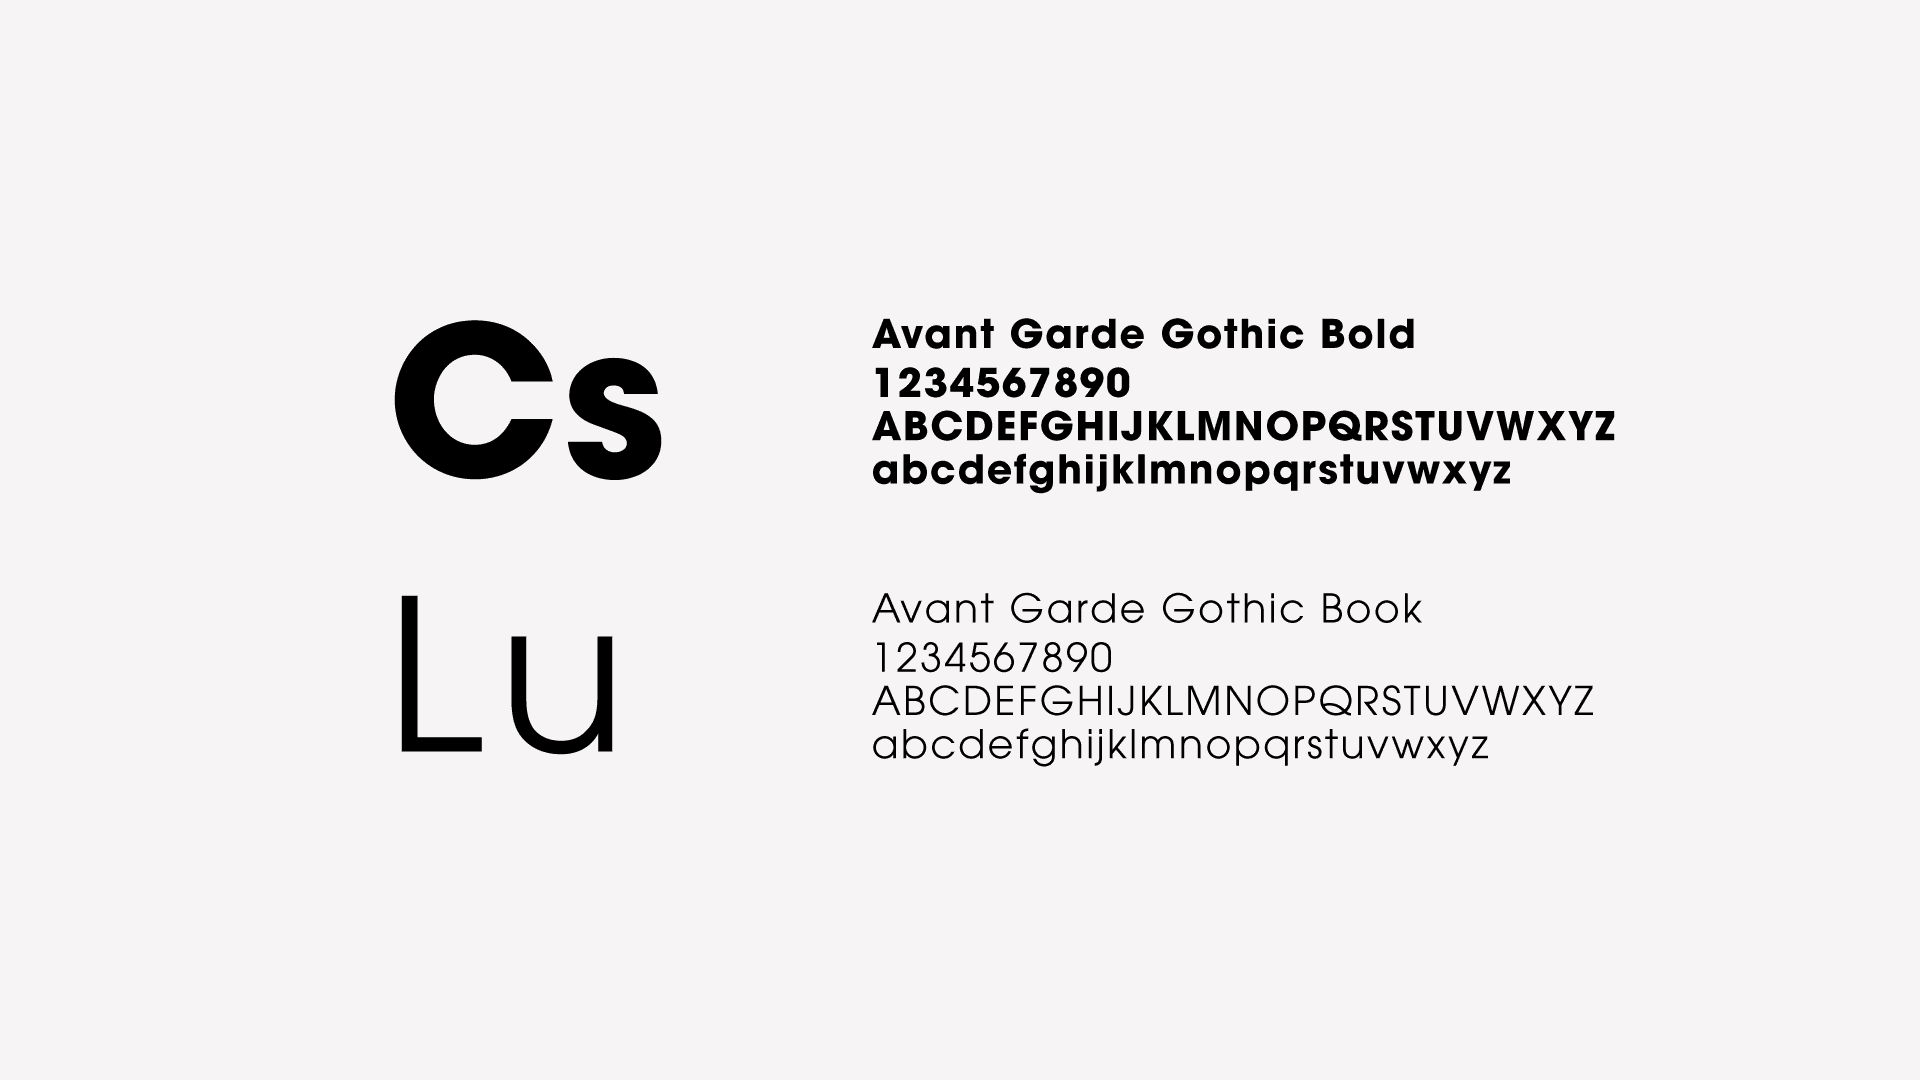 CS Luxury brand fonts